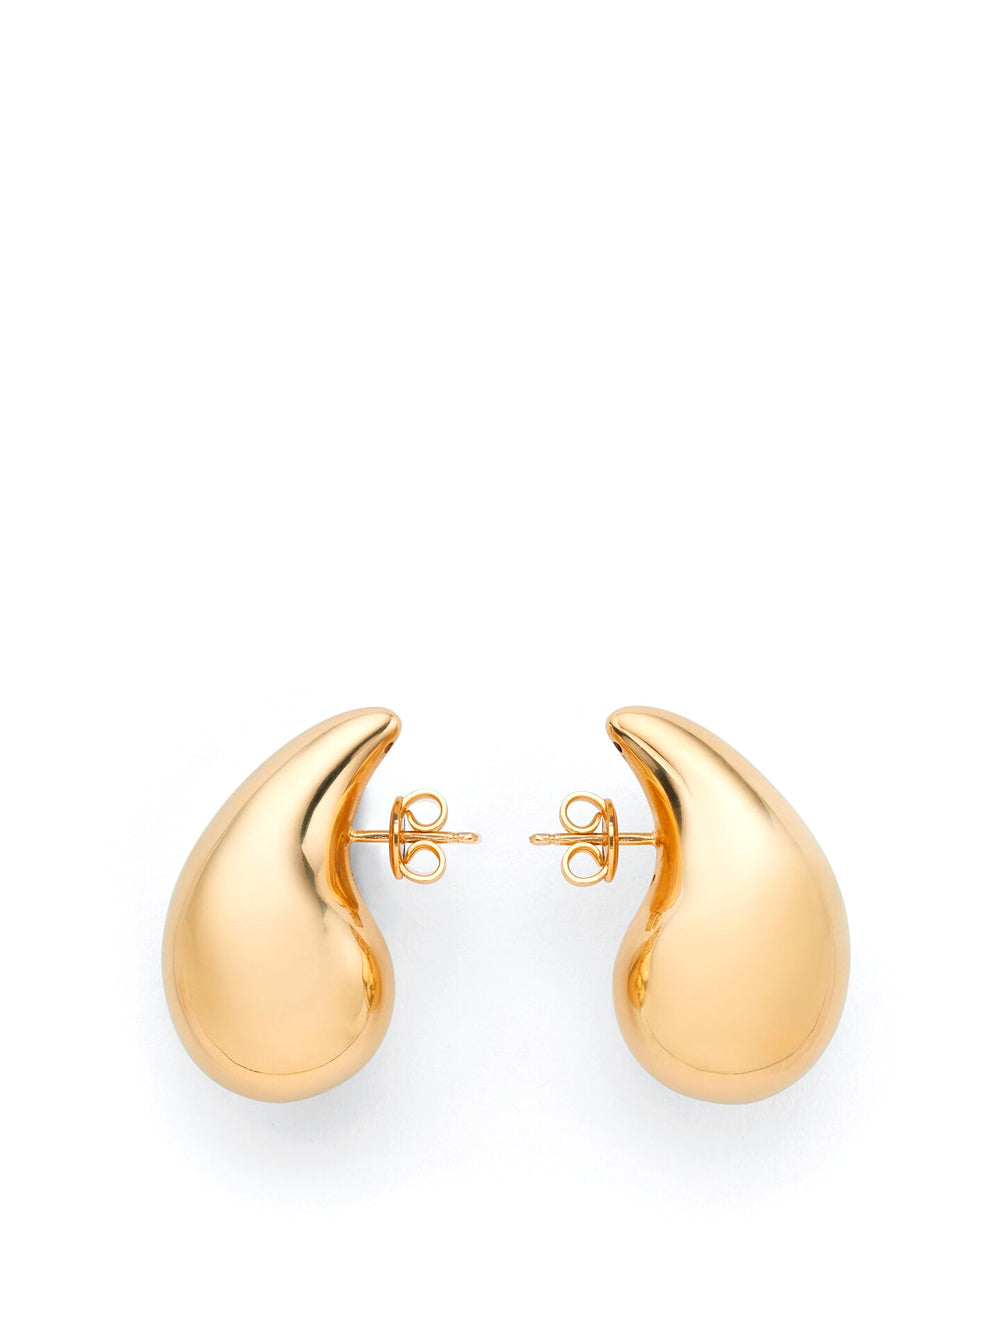 Gold Drop earrings